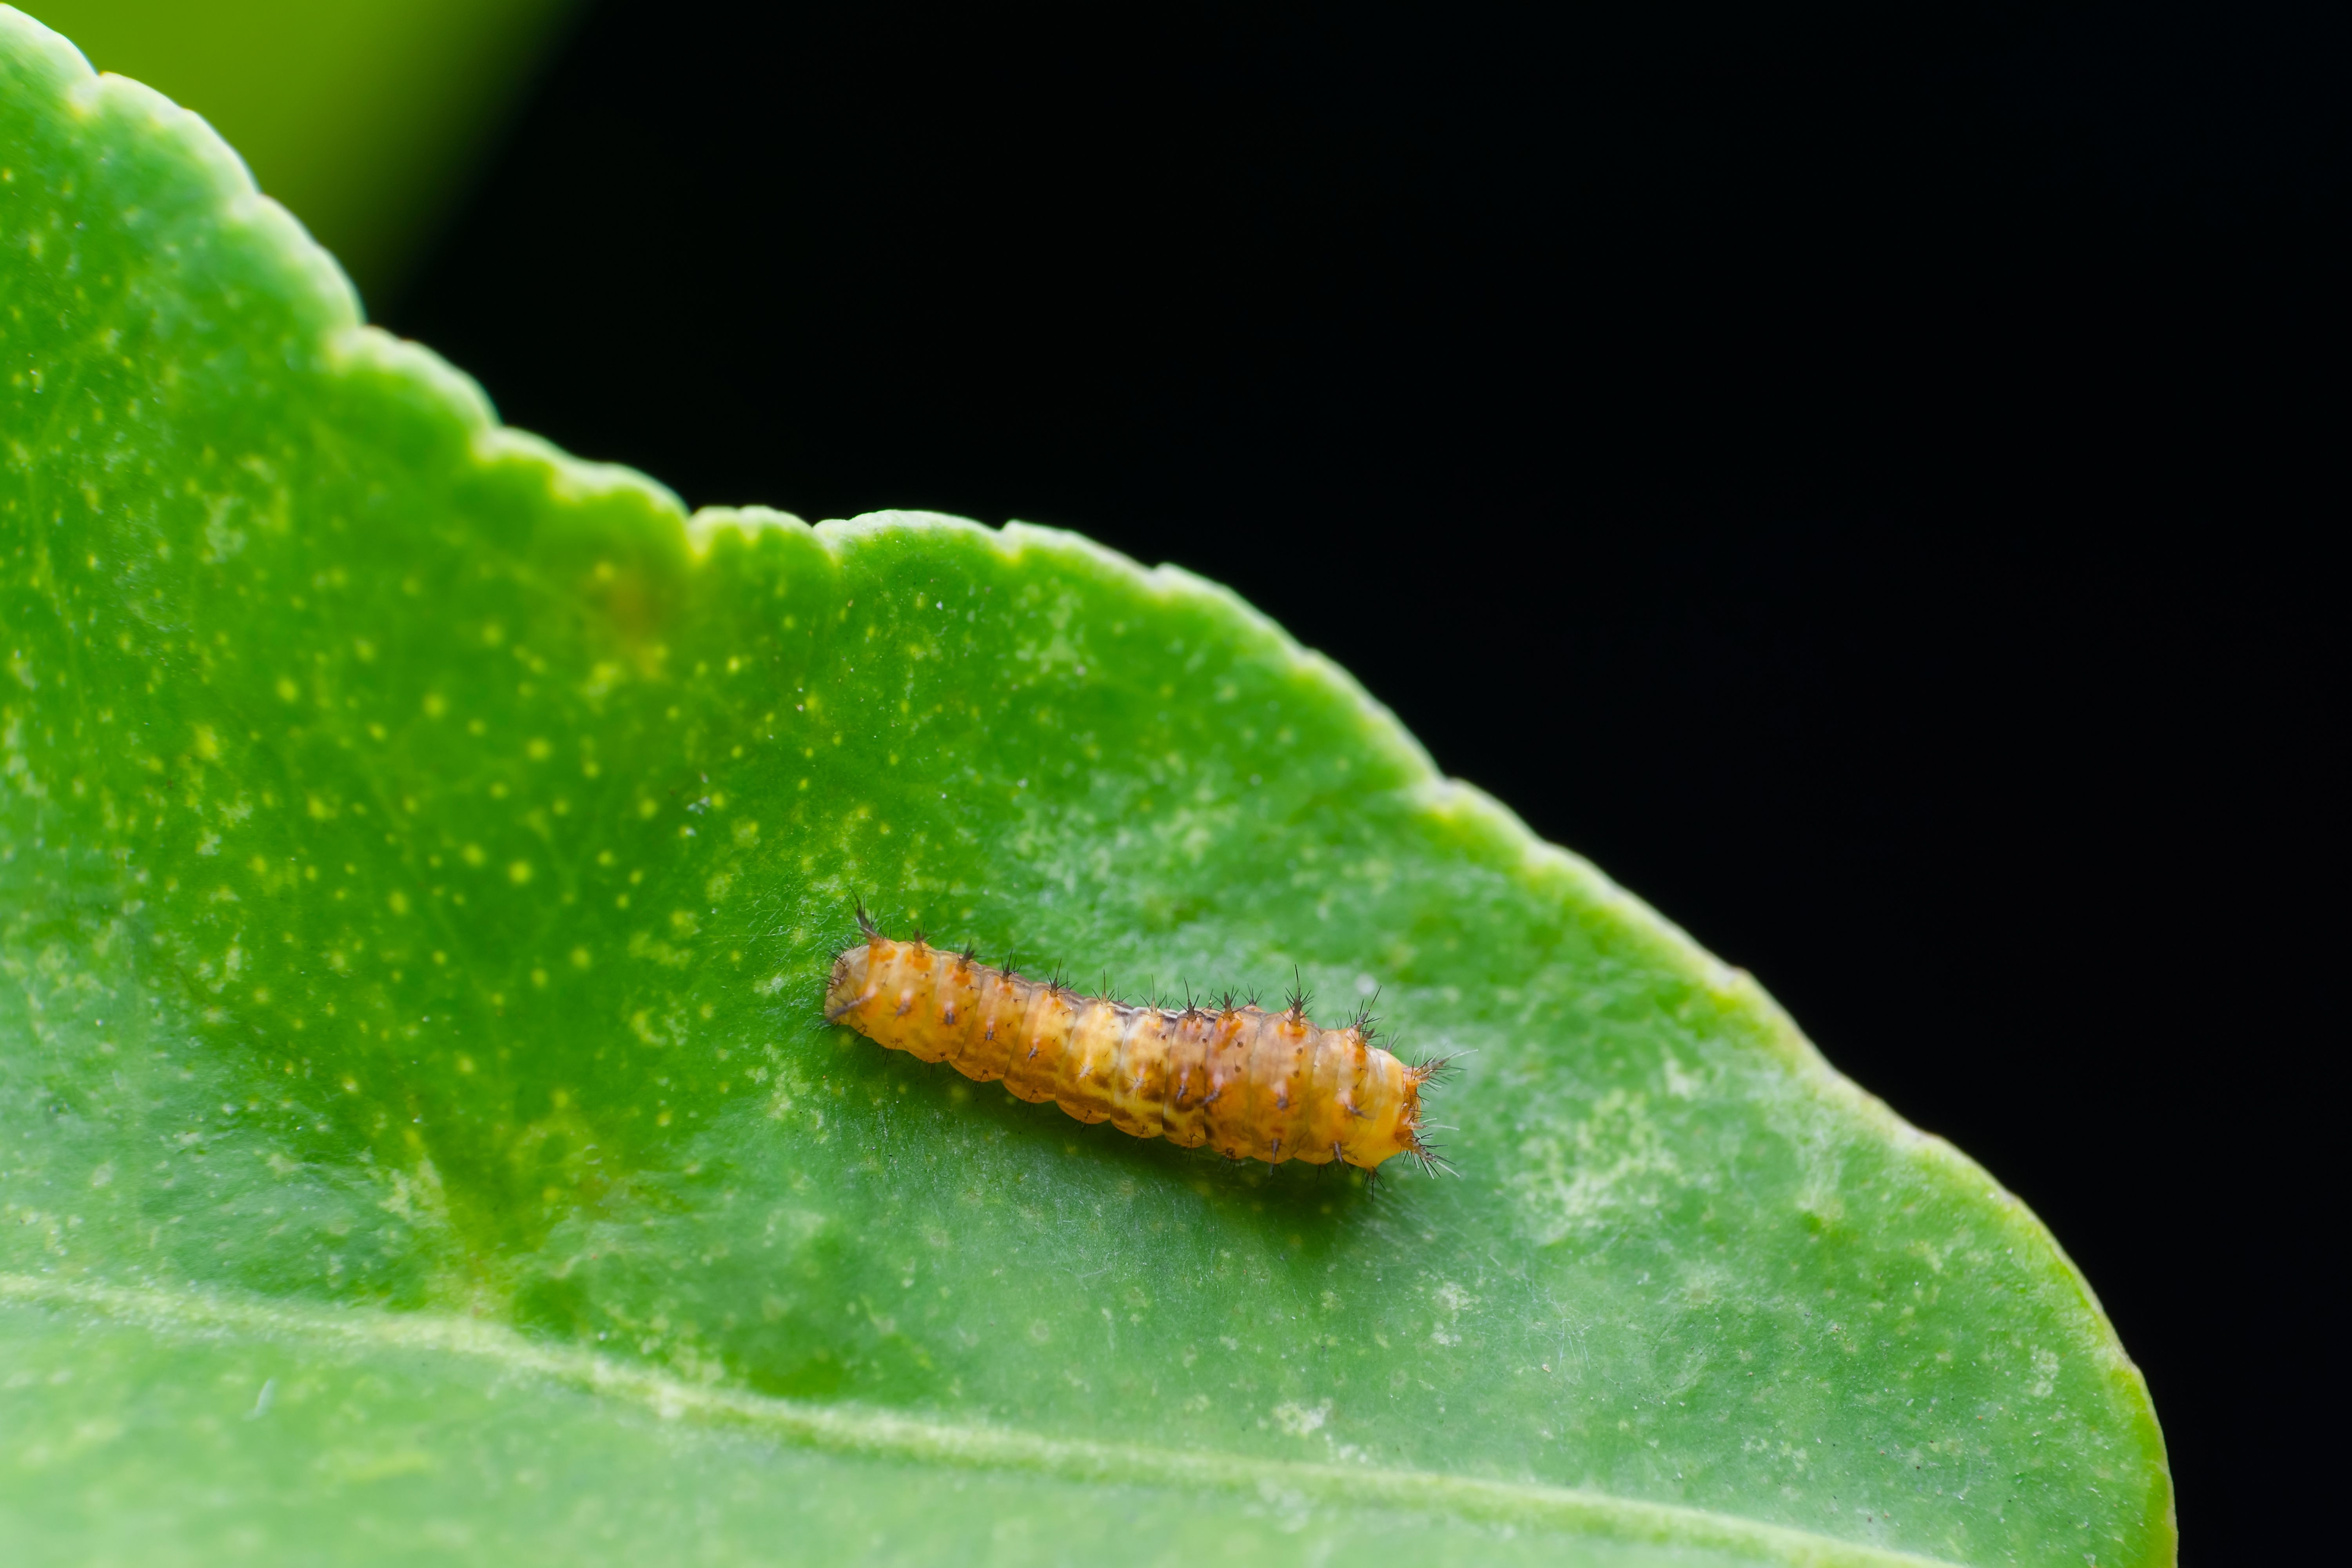 Descubren en los insectos un comportamiento de salto desconocido hasta ahora